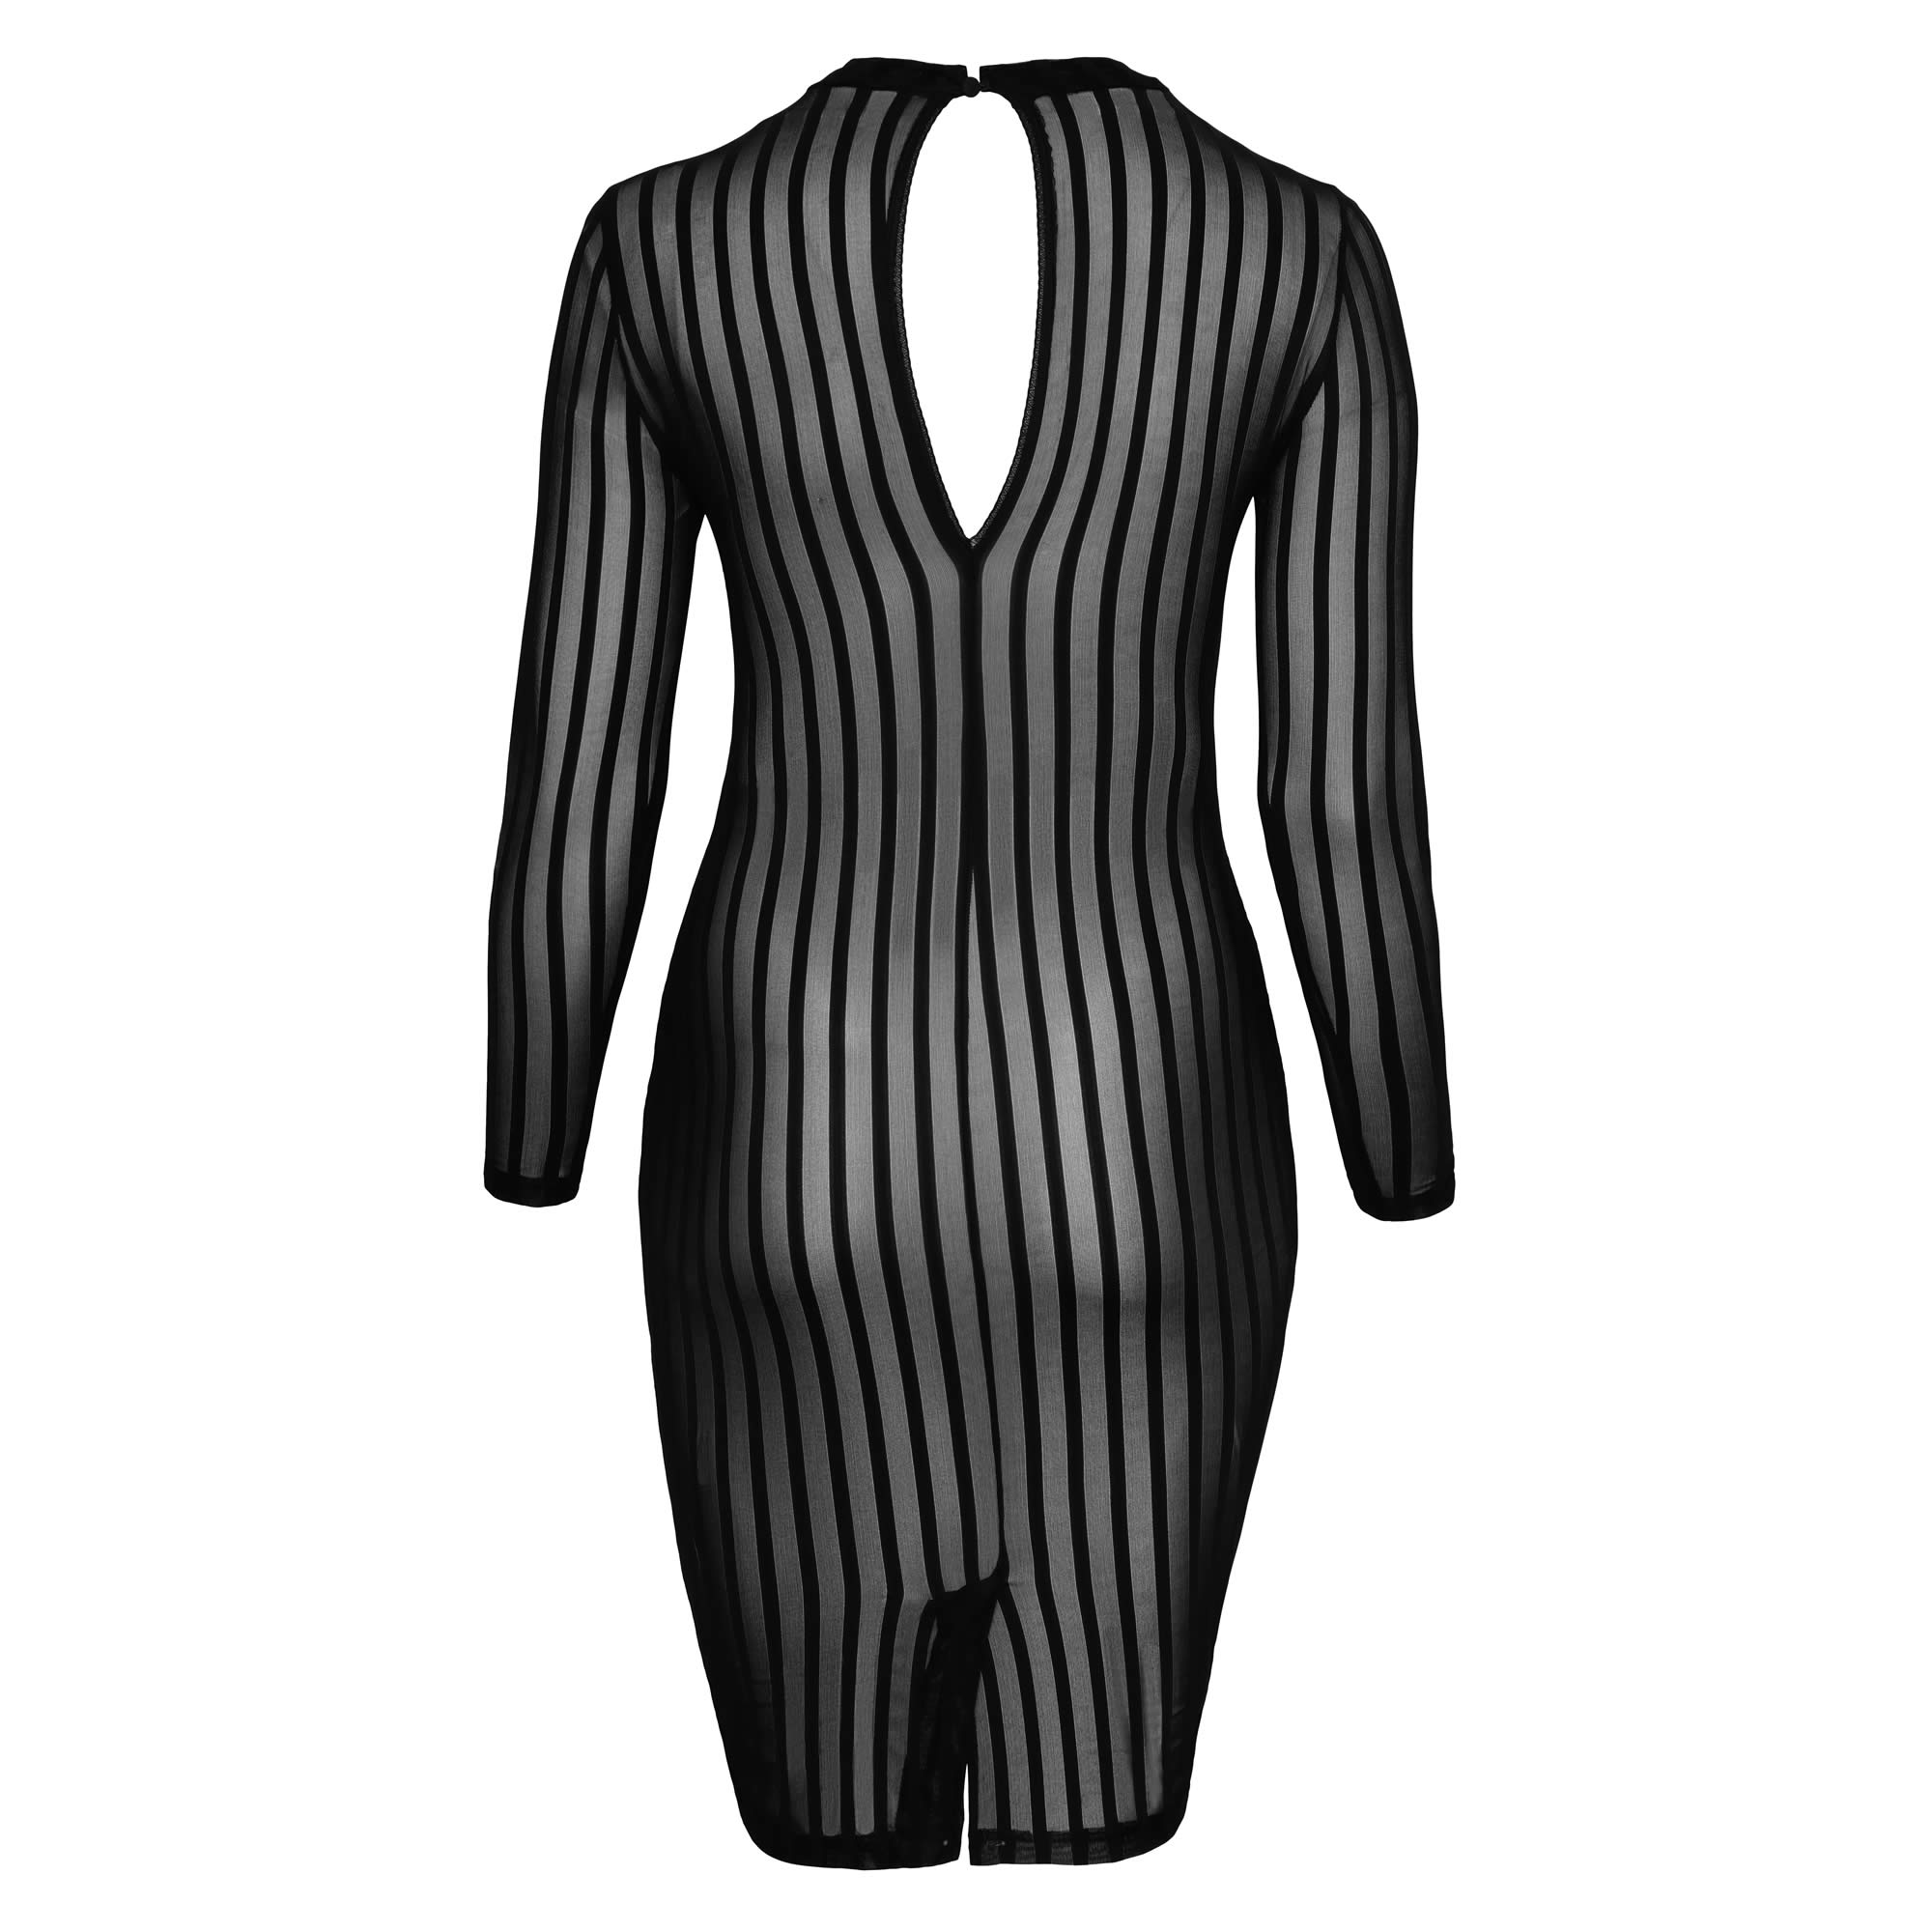 Noir Transparent Plus Size Dress with Stripes